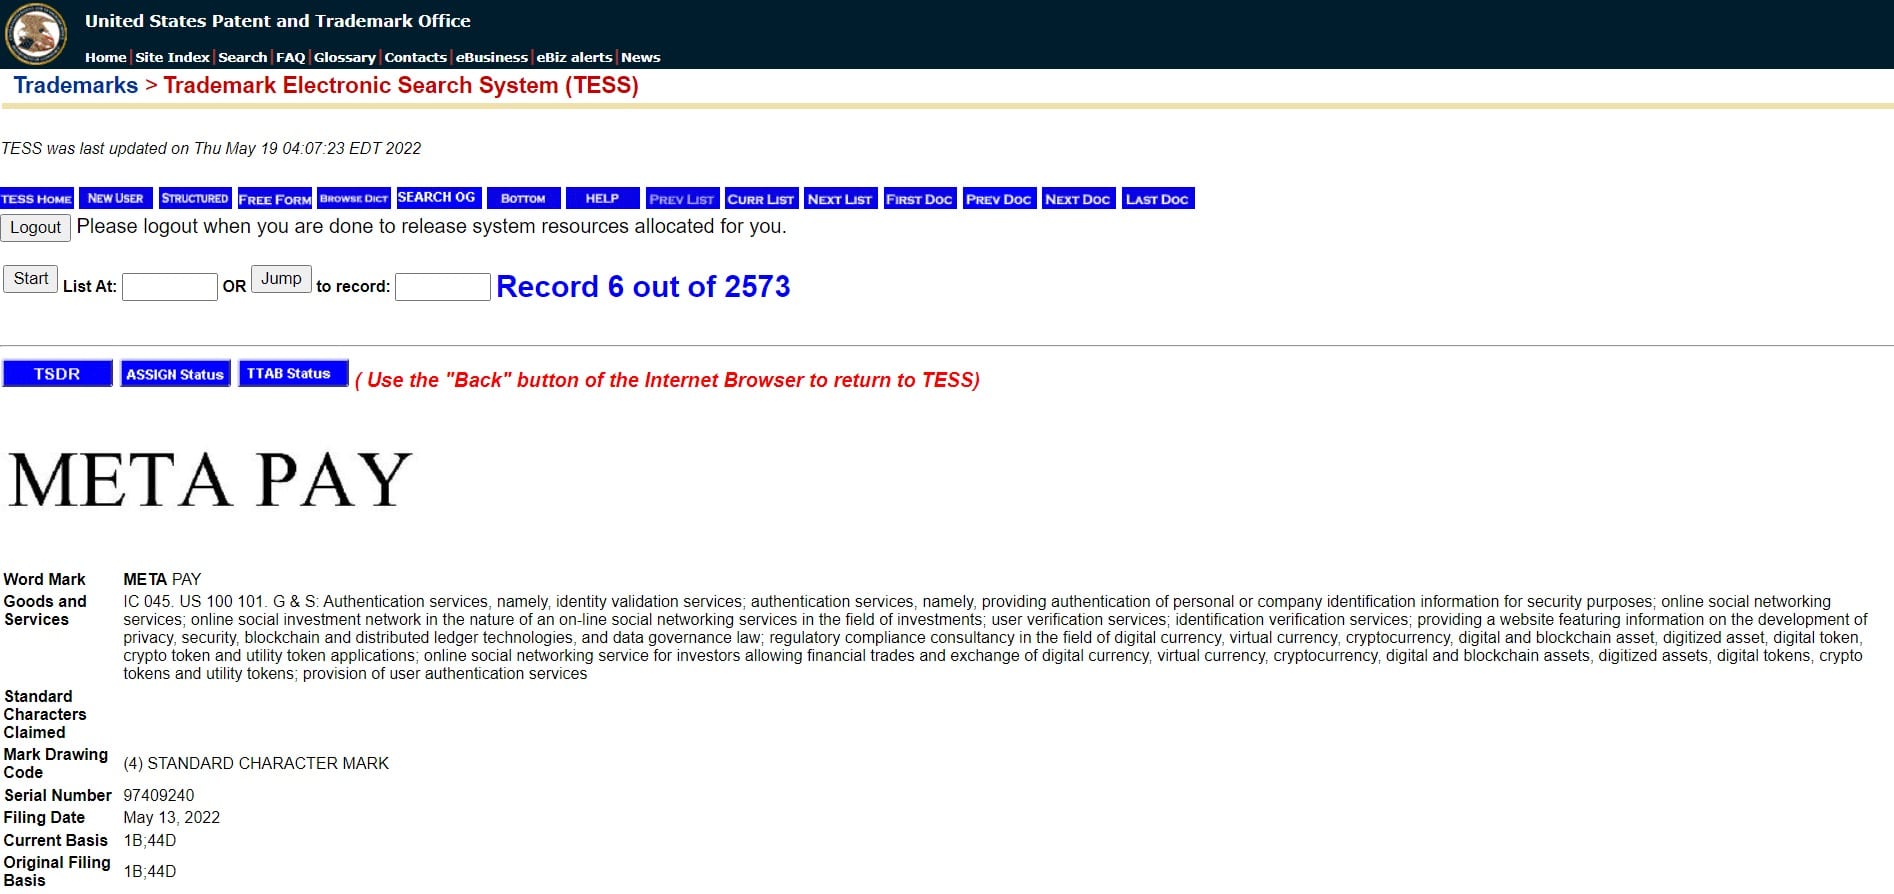 Meta's Meta Pay handelsmerkregistratie op de website van het United States Patent and Trademark Office